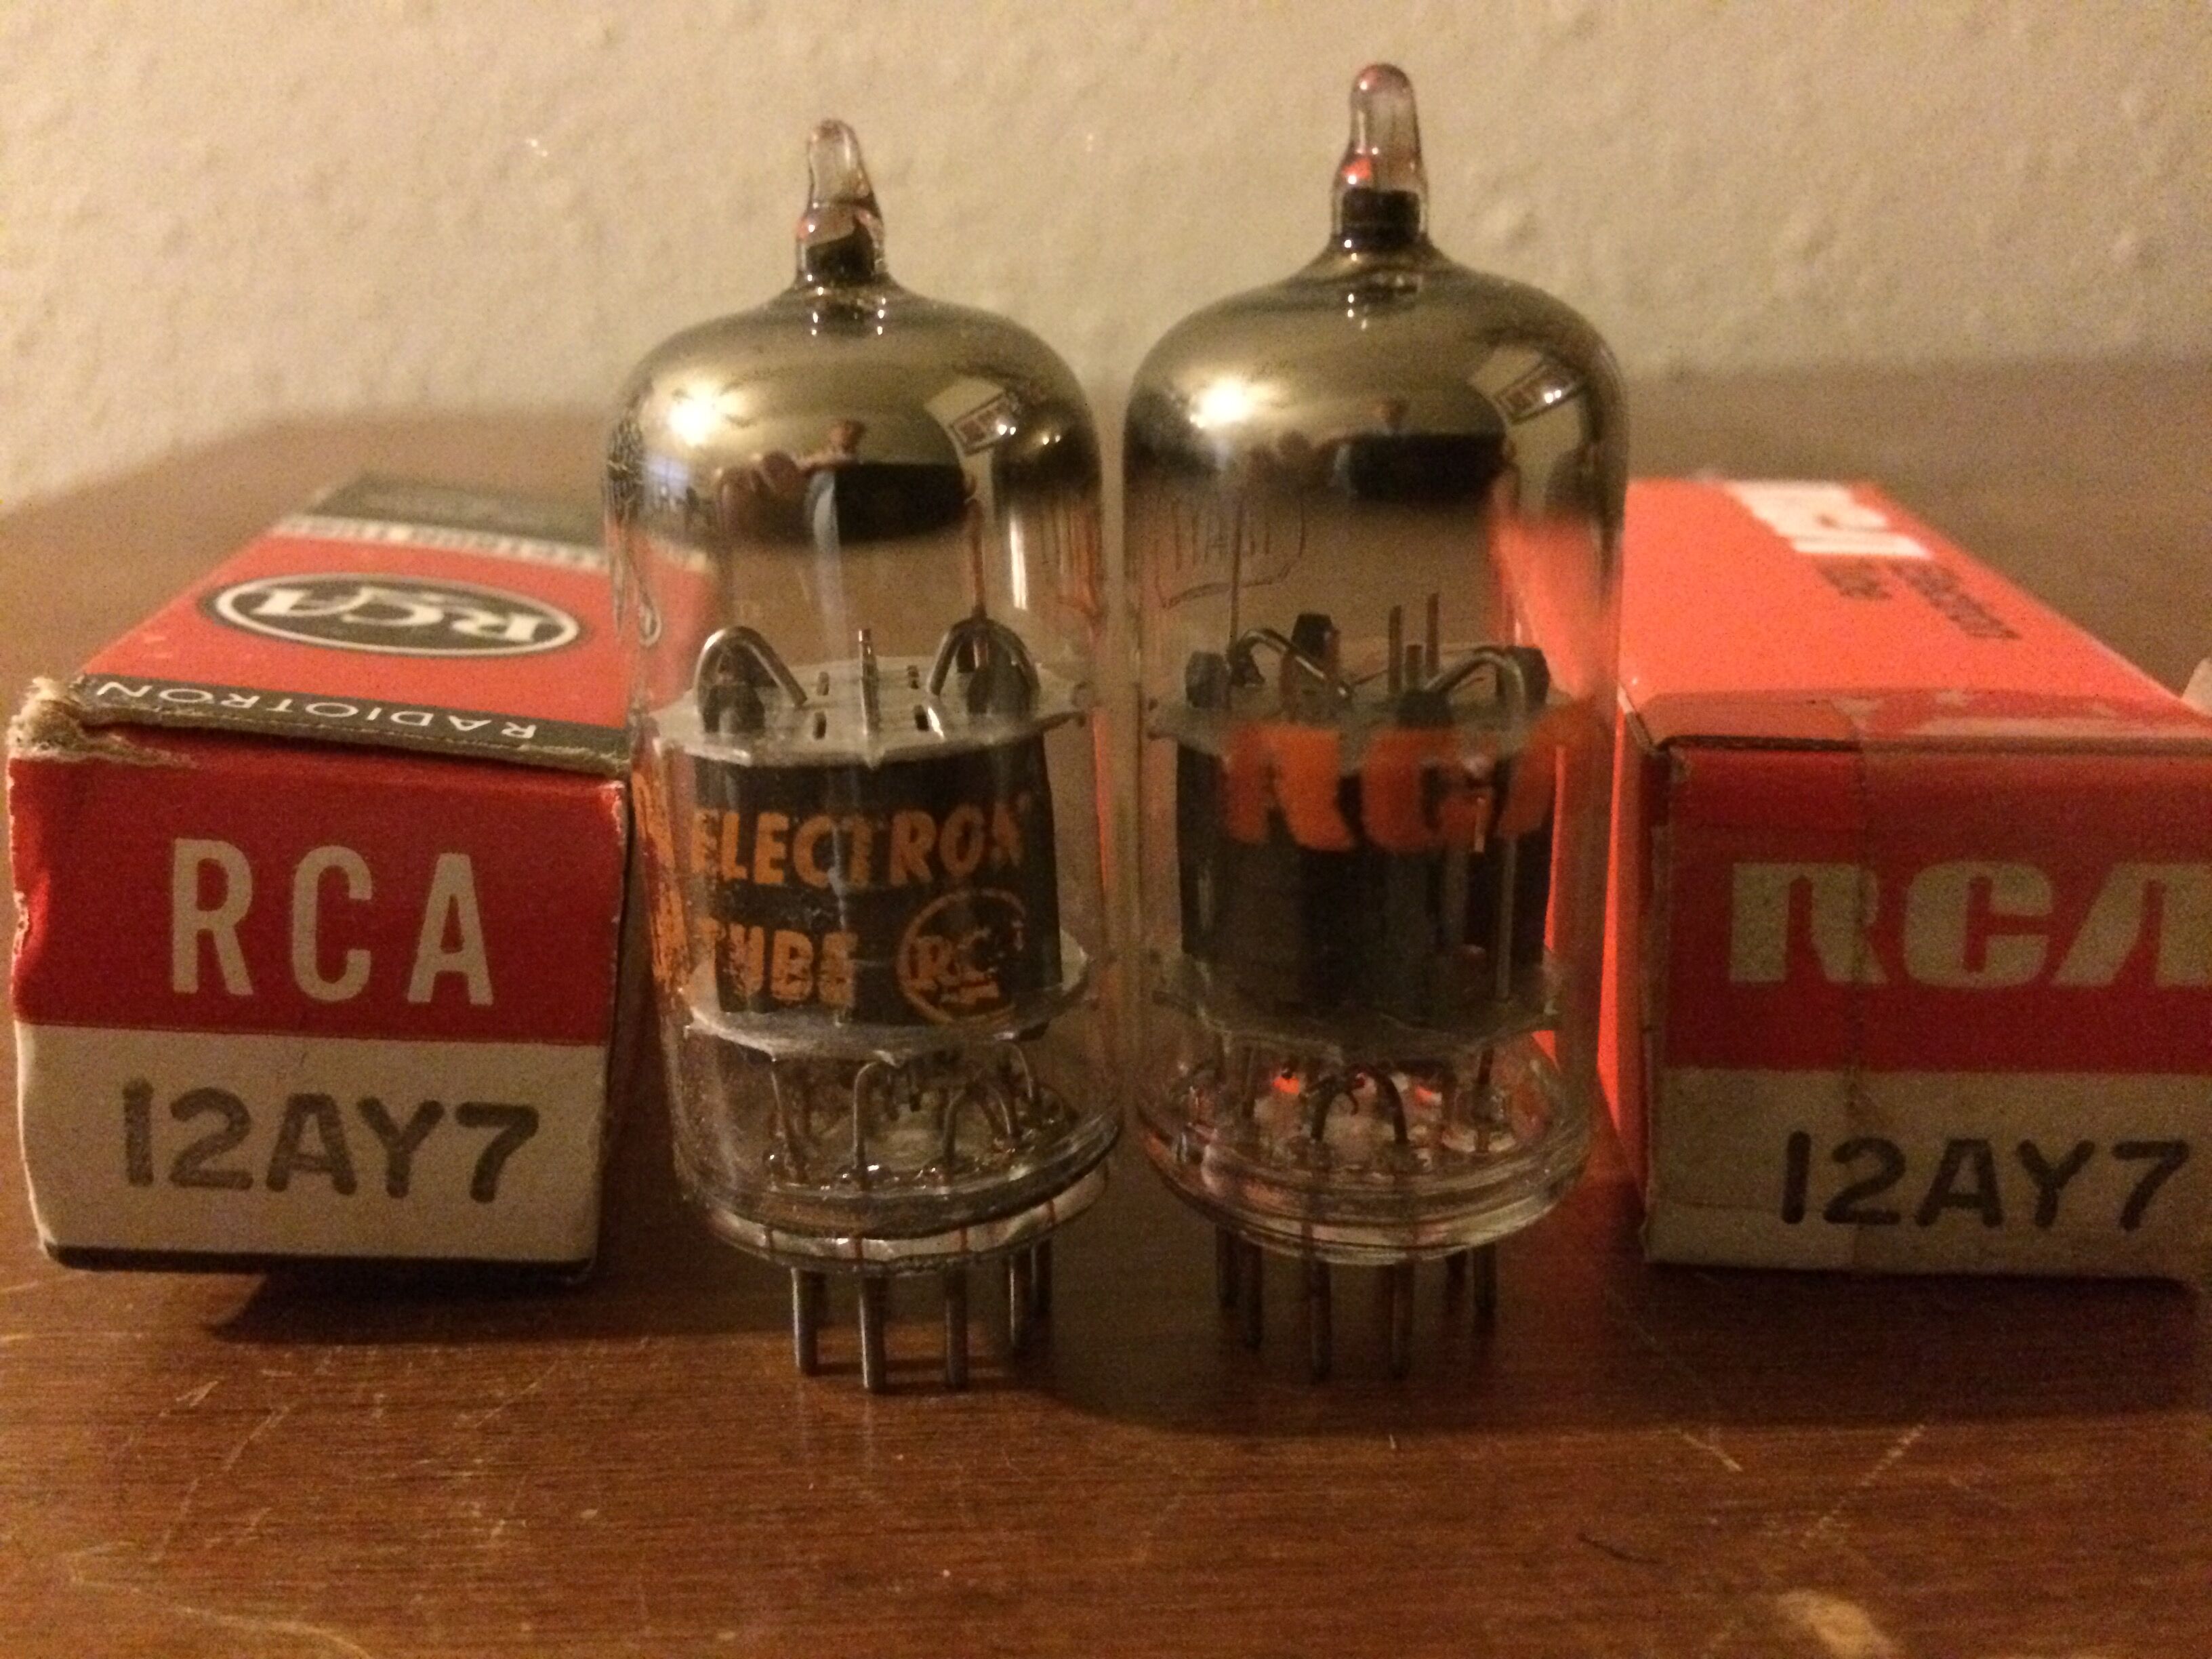 NOS 12ay7 vacuum tubes